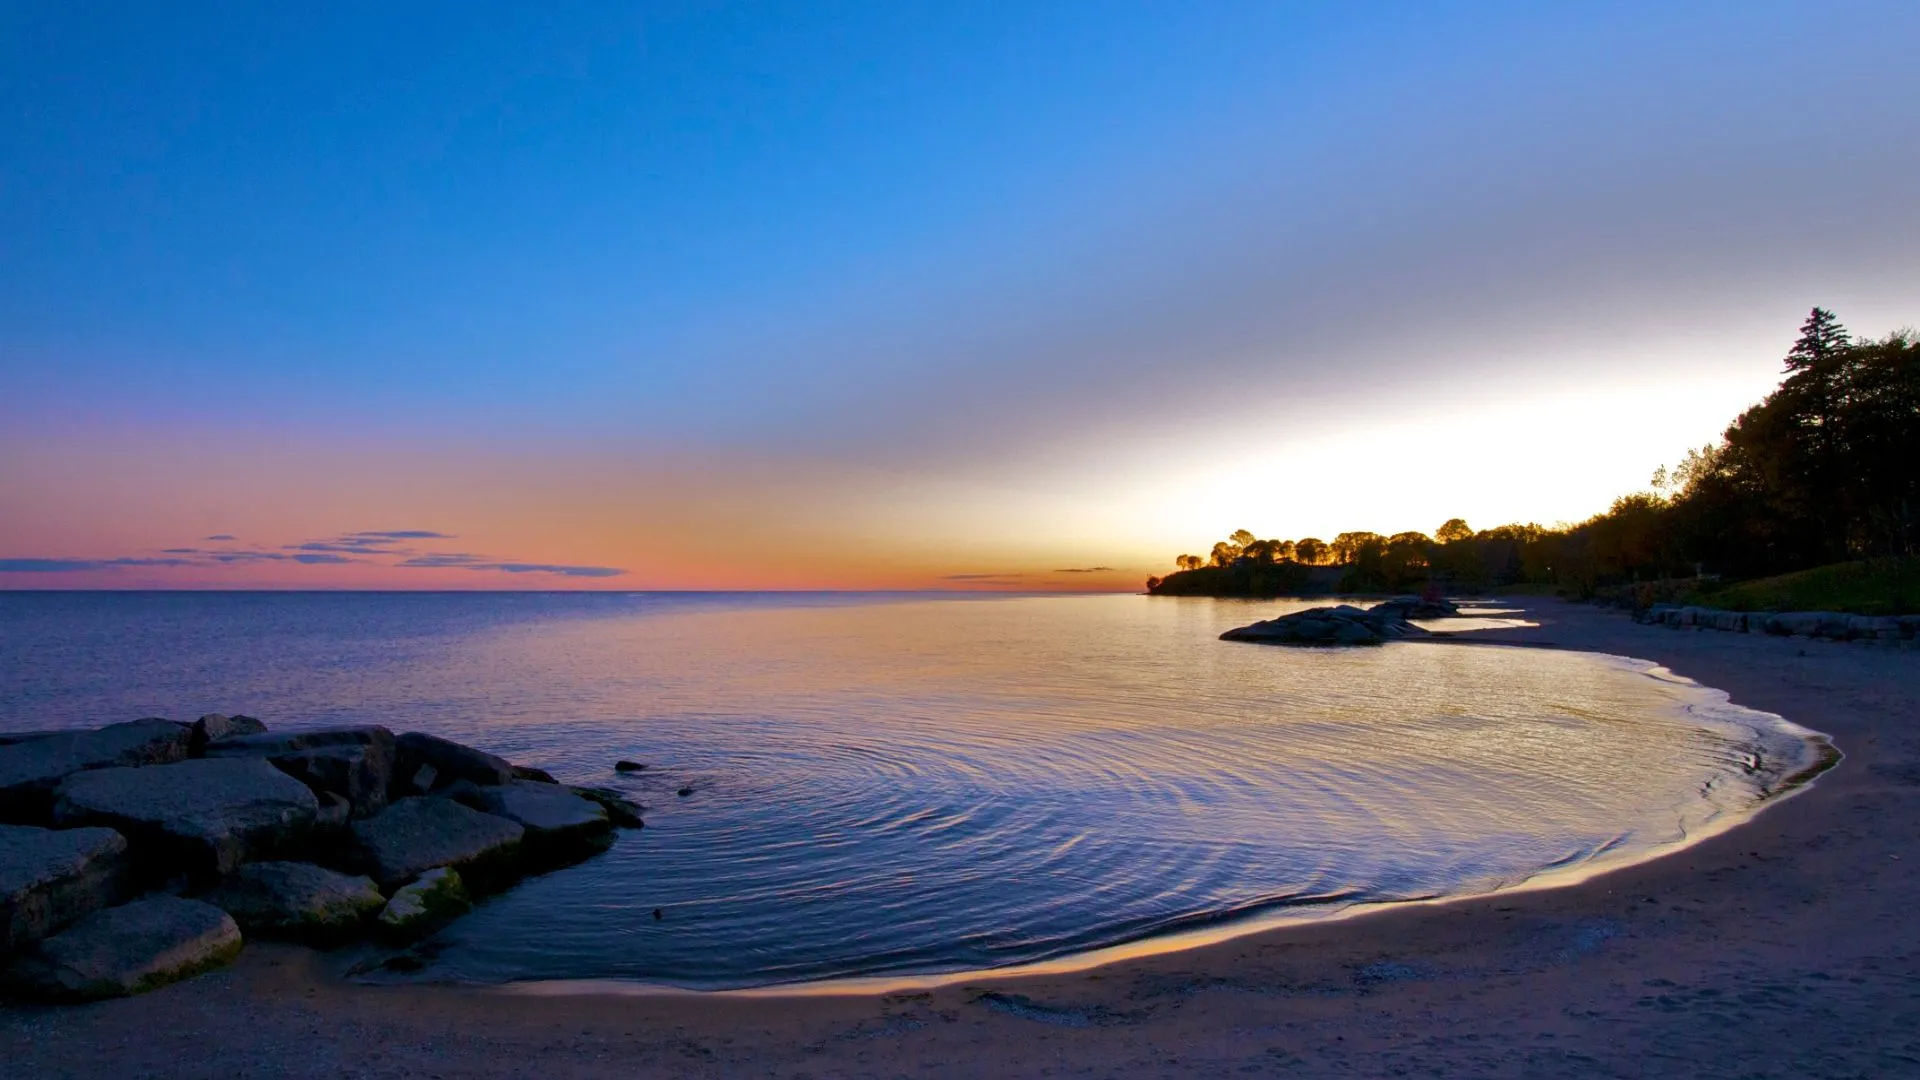 A twilight view on Lake Ontario